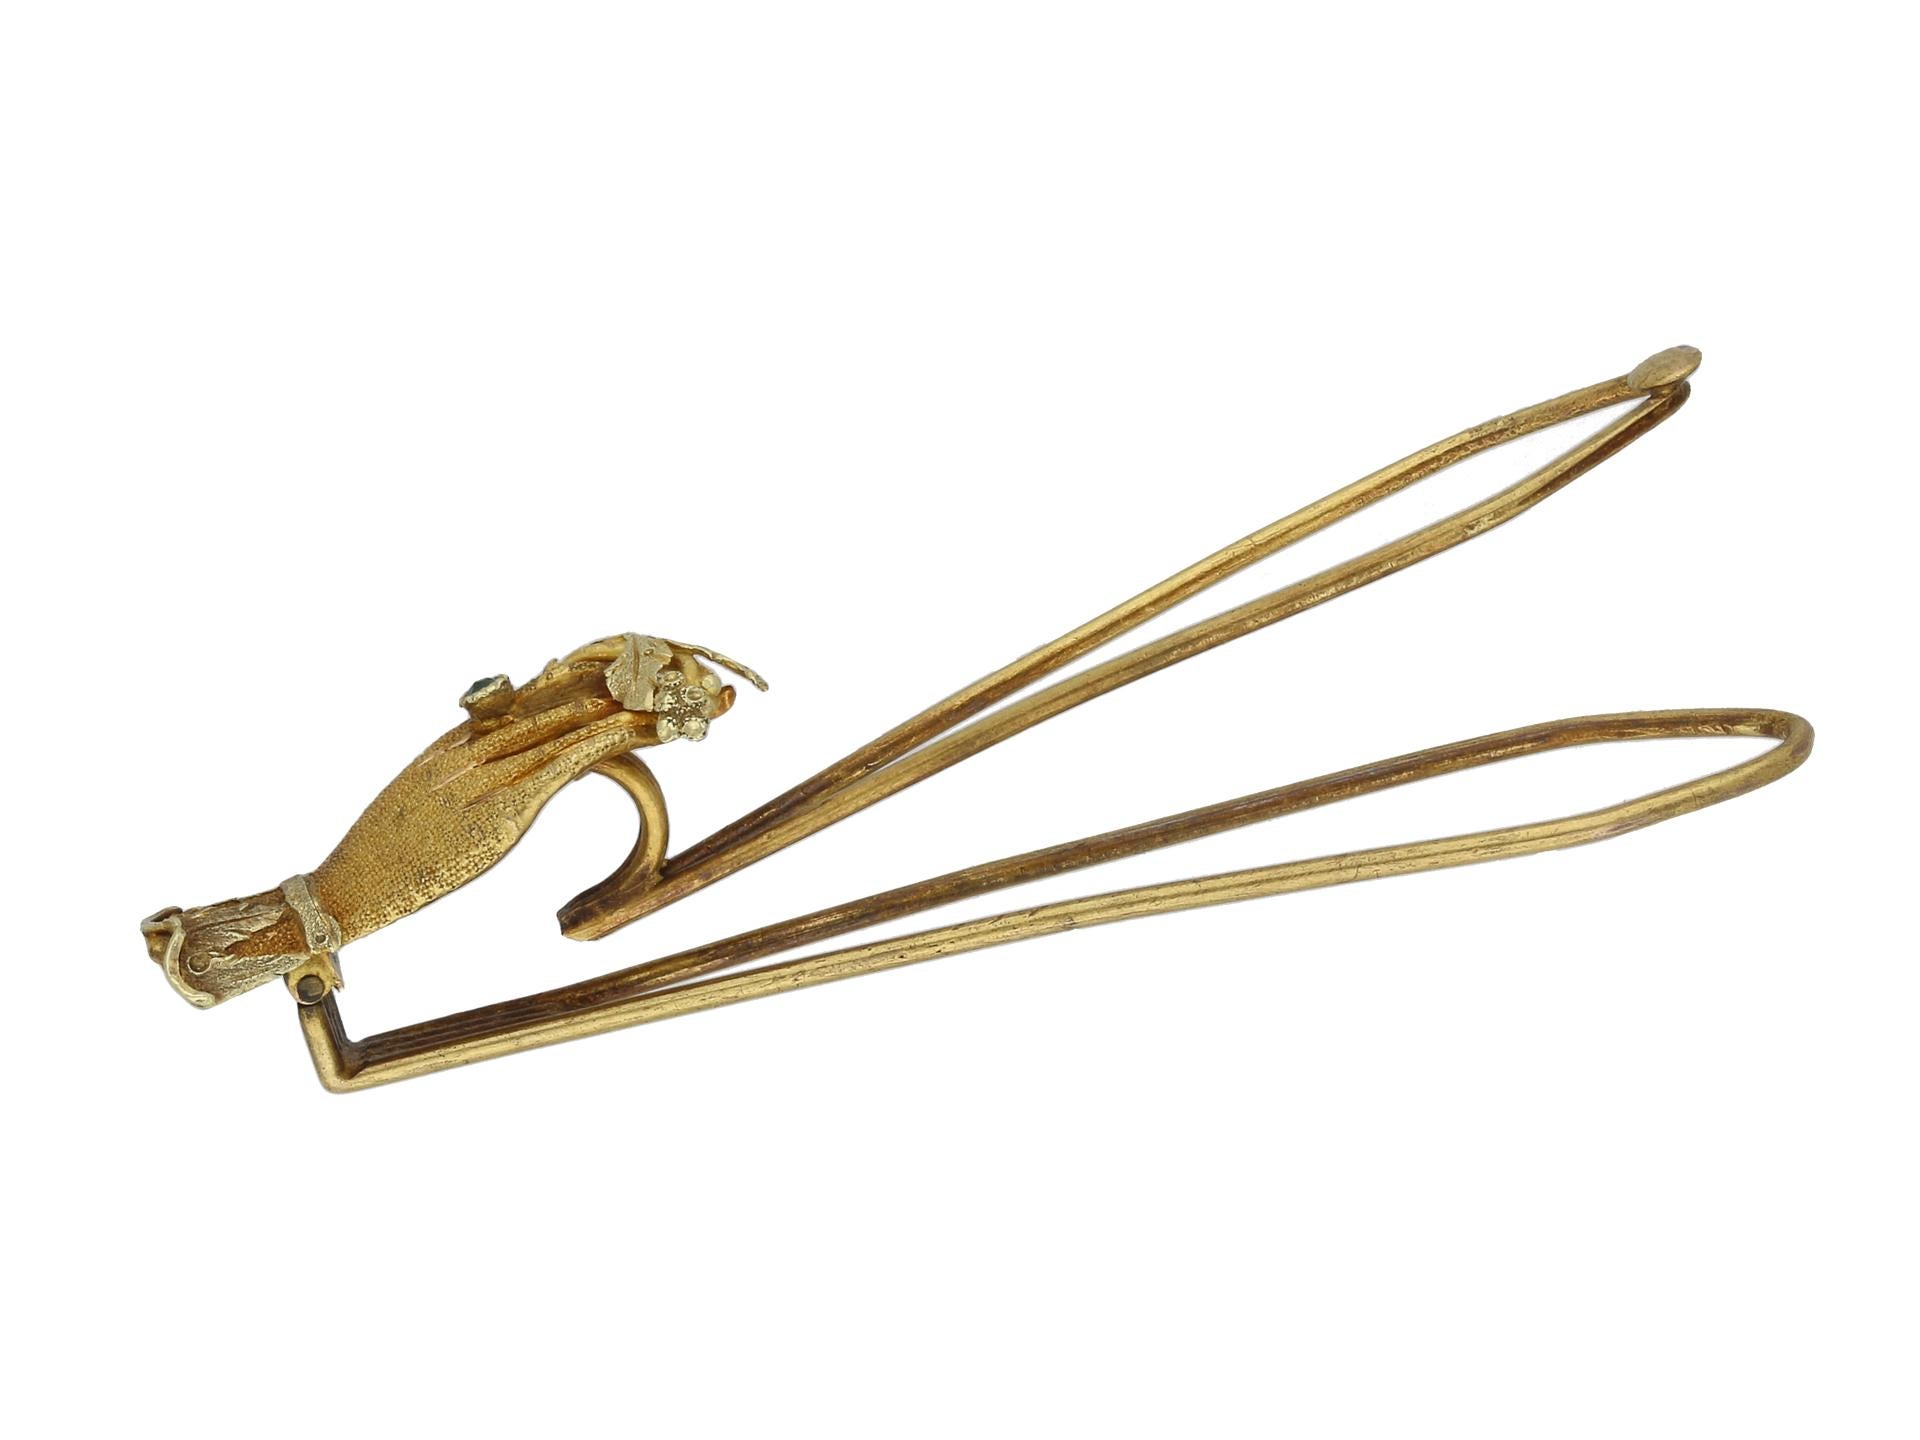 Georgische Haarspange oder Schalspange. Eine Haarspange aus Gelbgold mit einer Hand mit gekräuselter Manschette, die zwischen Zeige- und Mittelfinger einen Zweig mit Blättern und Beeren hält und einen Ring trägt, der mit einem kissenförmigen Smaragd